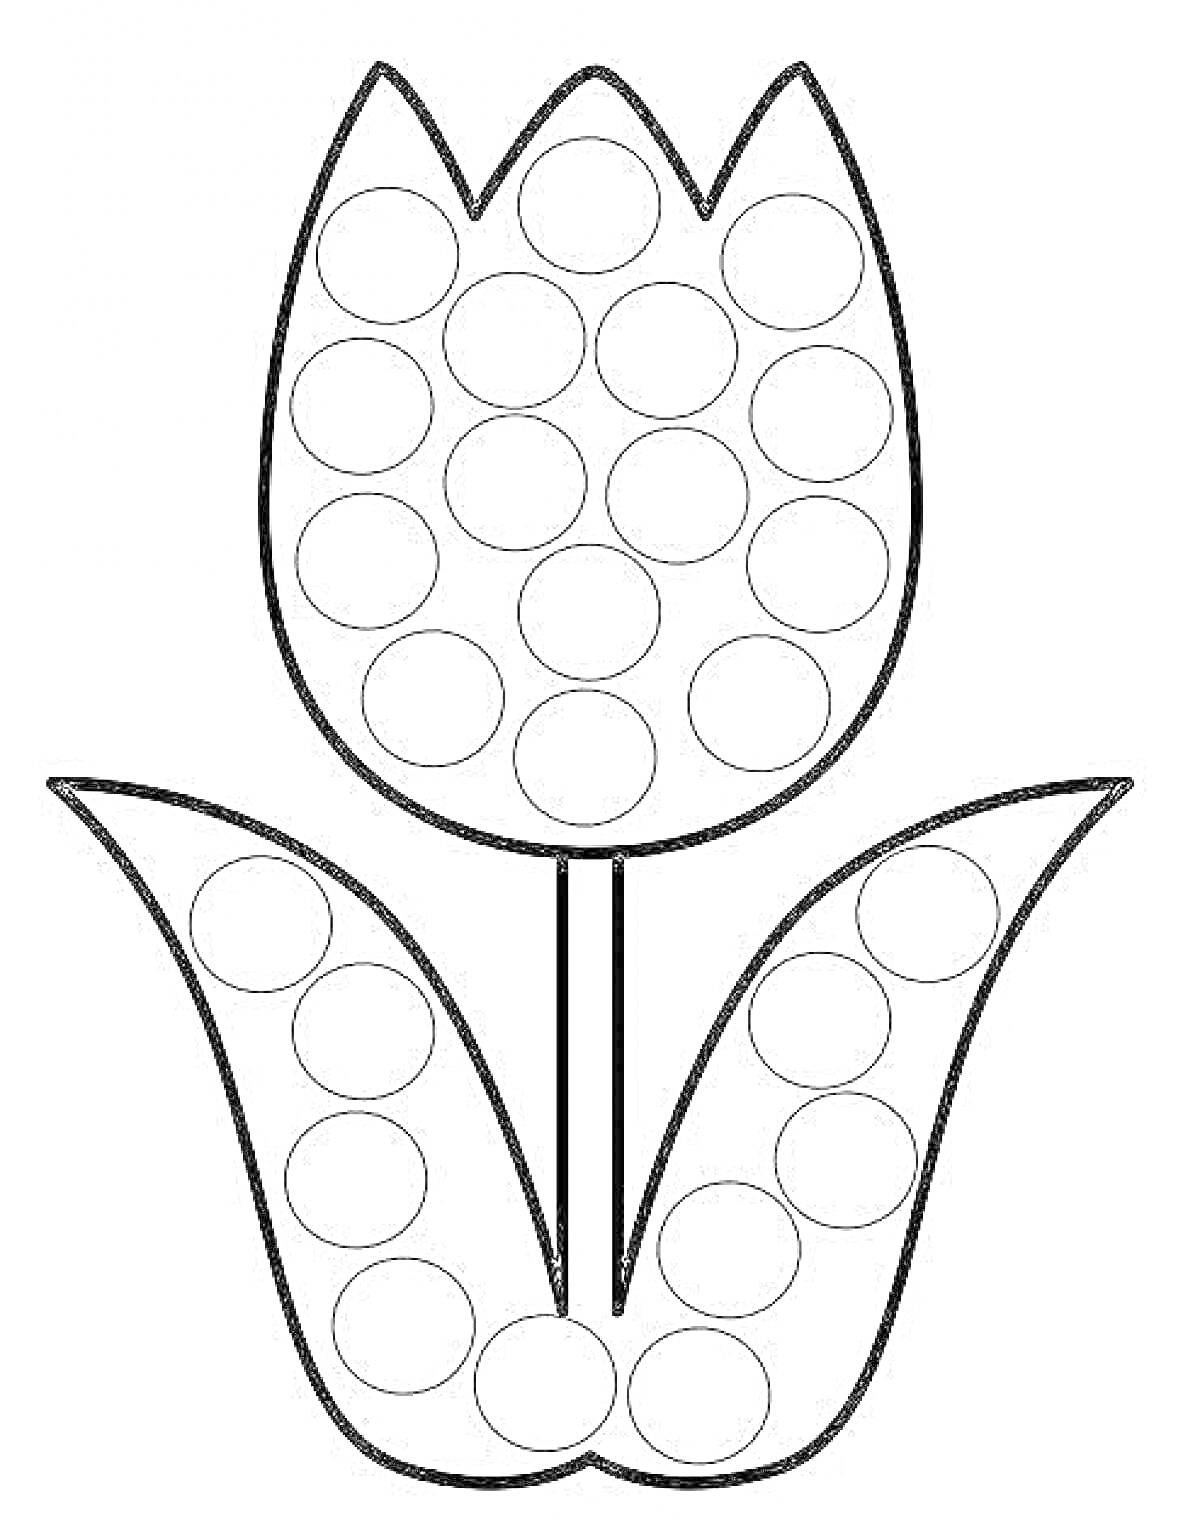 Раскраска шаблон цветок тюльпан с круглыми ячейками для раскрашивания пластилином